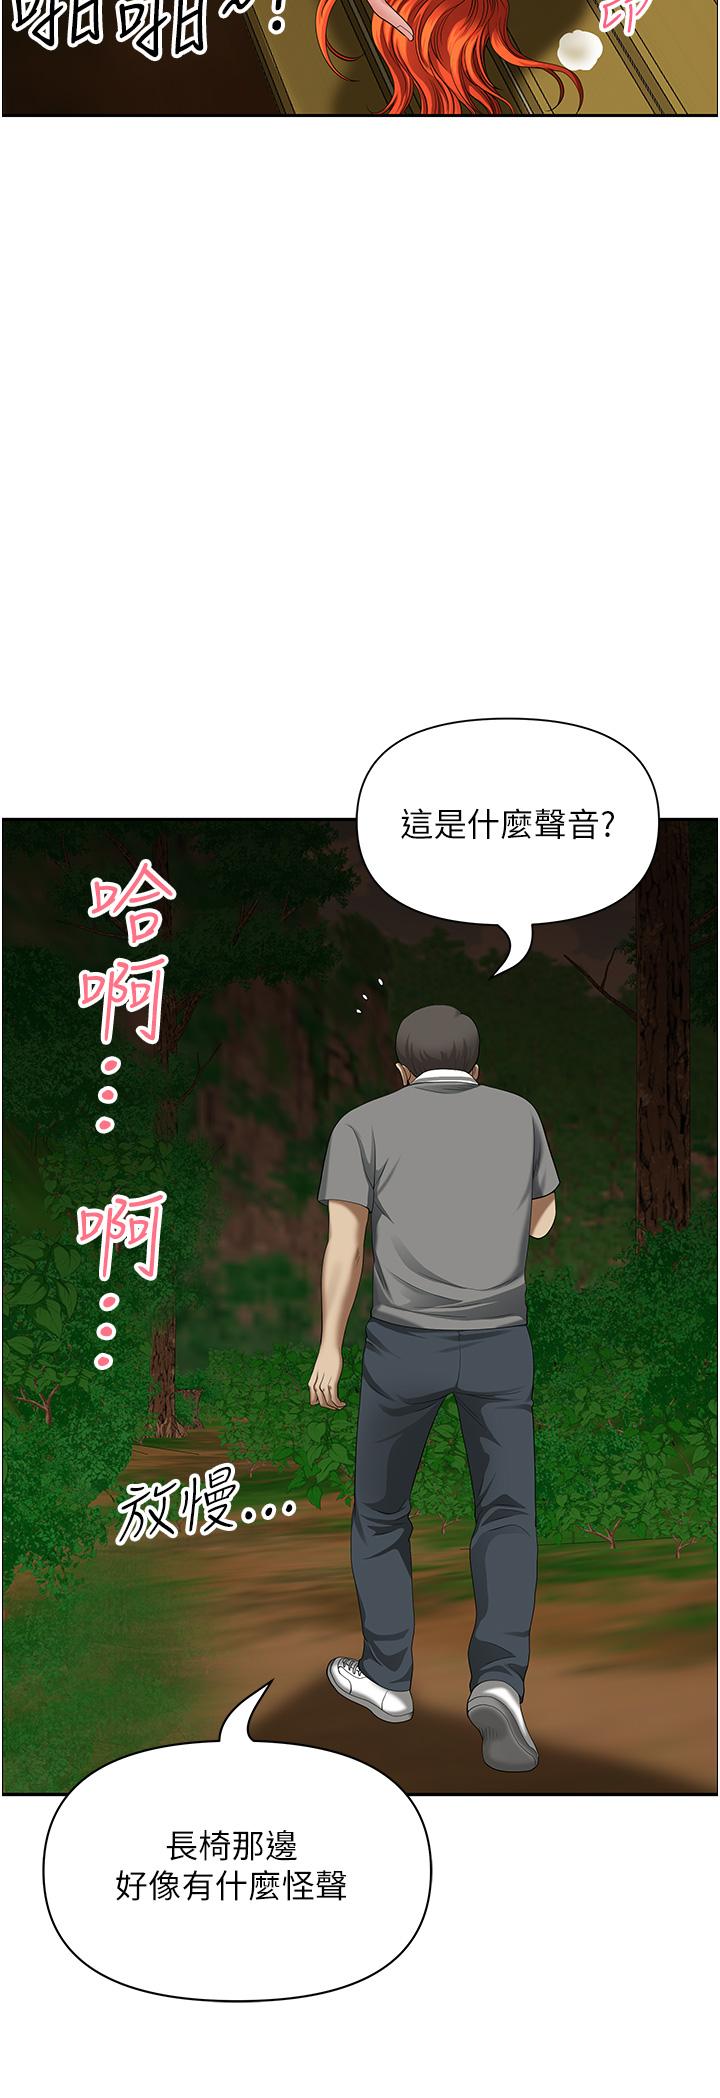 韩国污漫画 地方人妻們 第6话-散步小径炮声隆隆 2